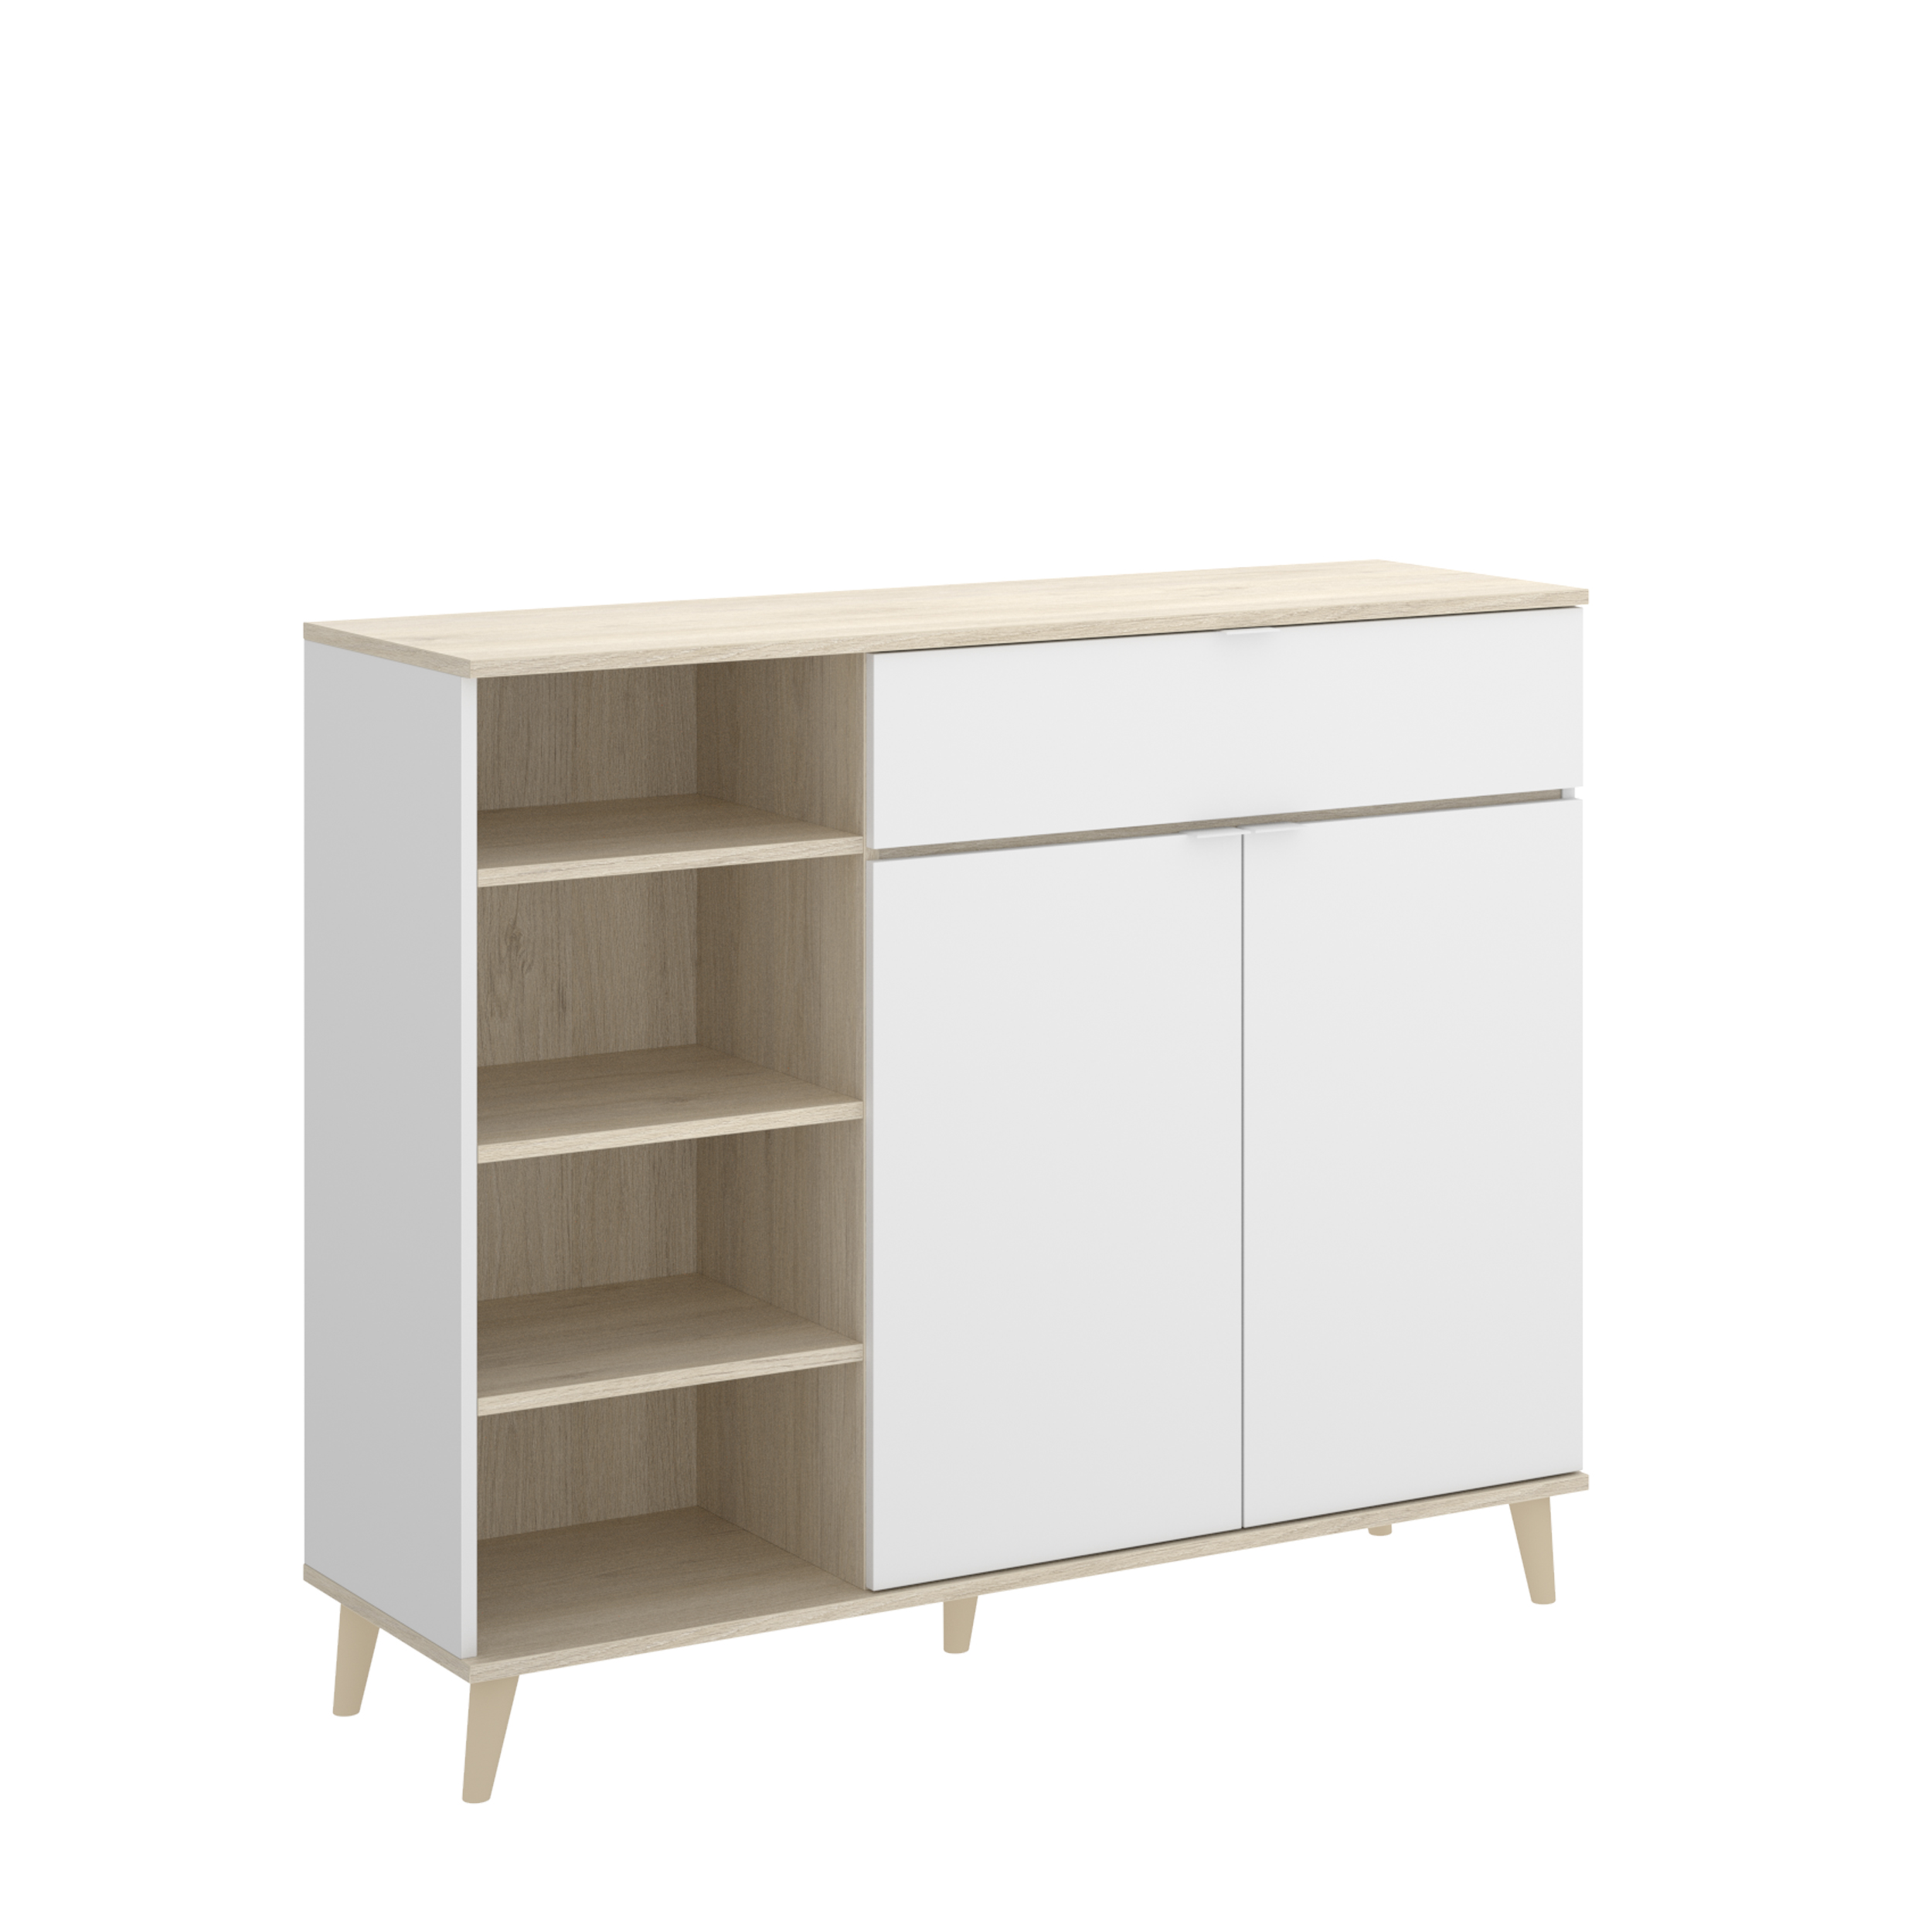 Mueble auxiliar de cocina 68 x 39.5 x 170 cm color blanco